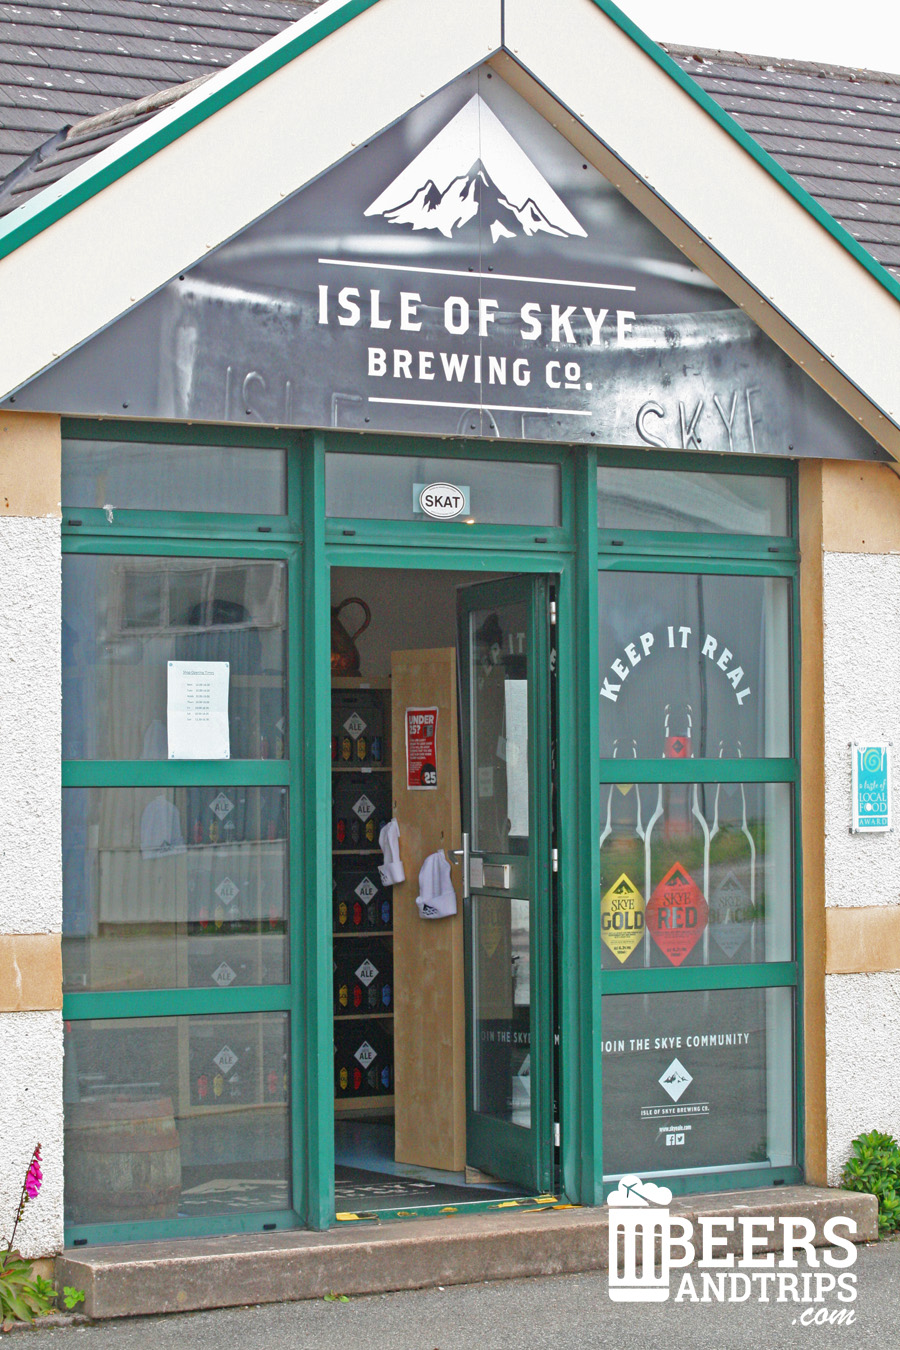 Tienda donde se pueden comprar las cervezas de The Isle of Skye Brewing